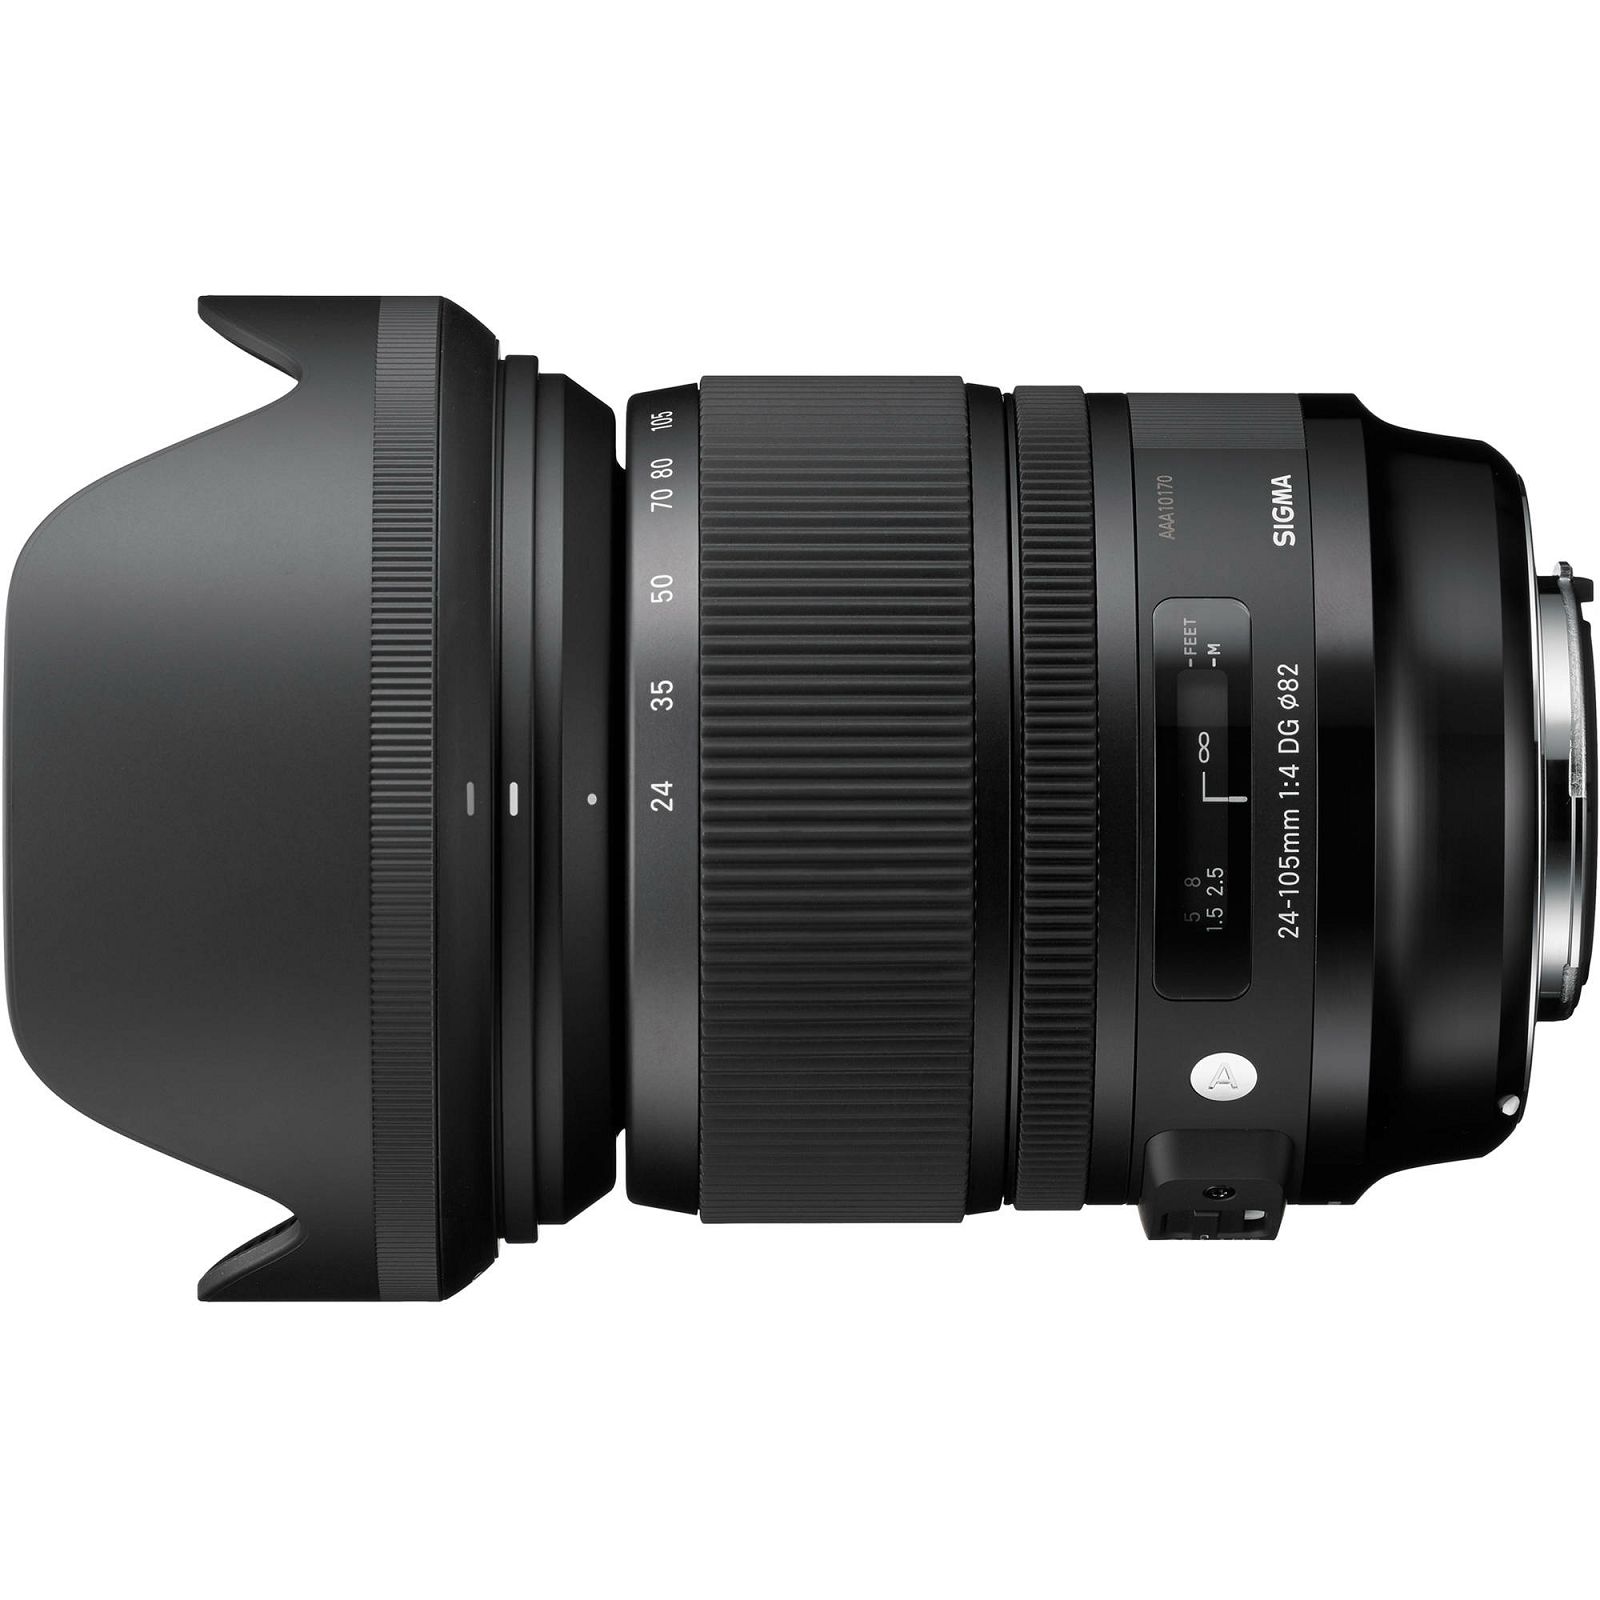 Sigma 24-105mm f/4 DG OS HSM ART standardni objektiv za Nikon F 24-105/4.0 24-105 F4 Zoom Lens